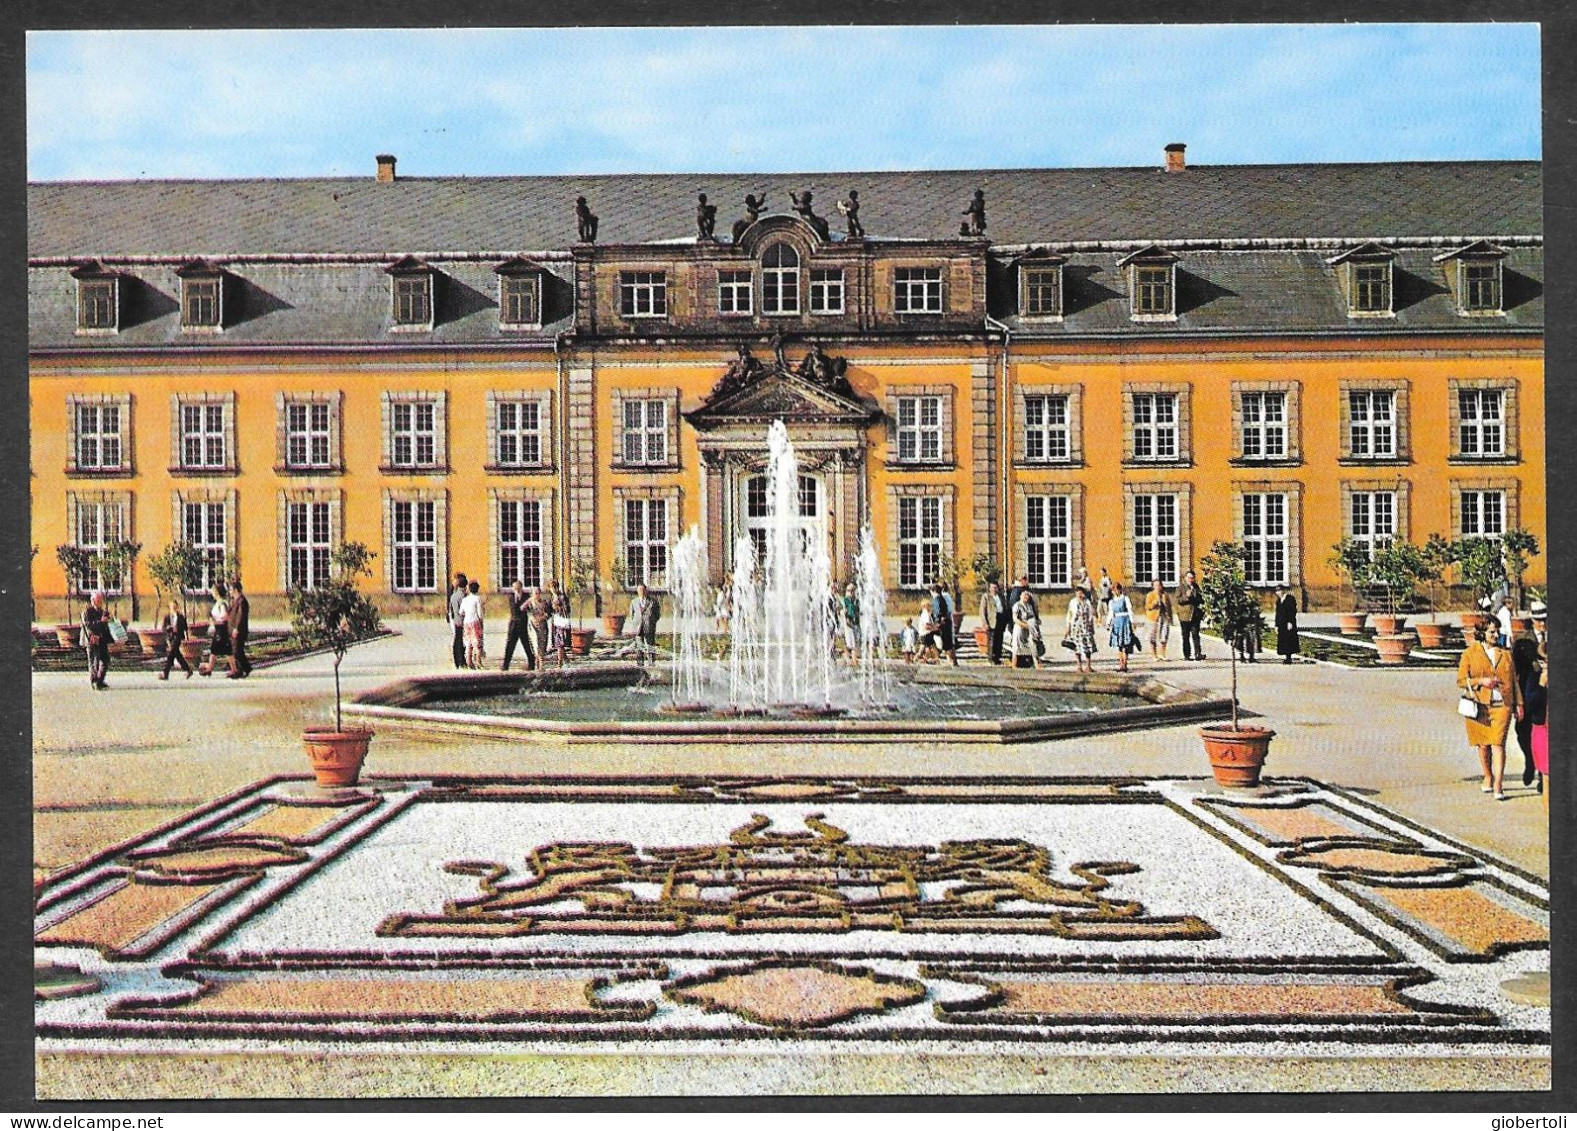 Germania/Germany/Allemagne: Castello, Castle, Château - Castles